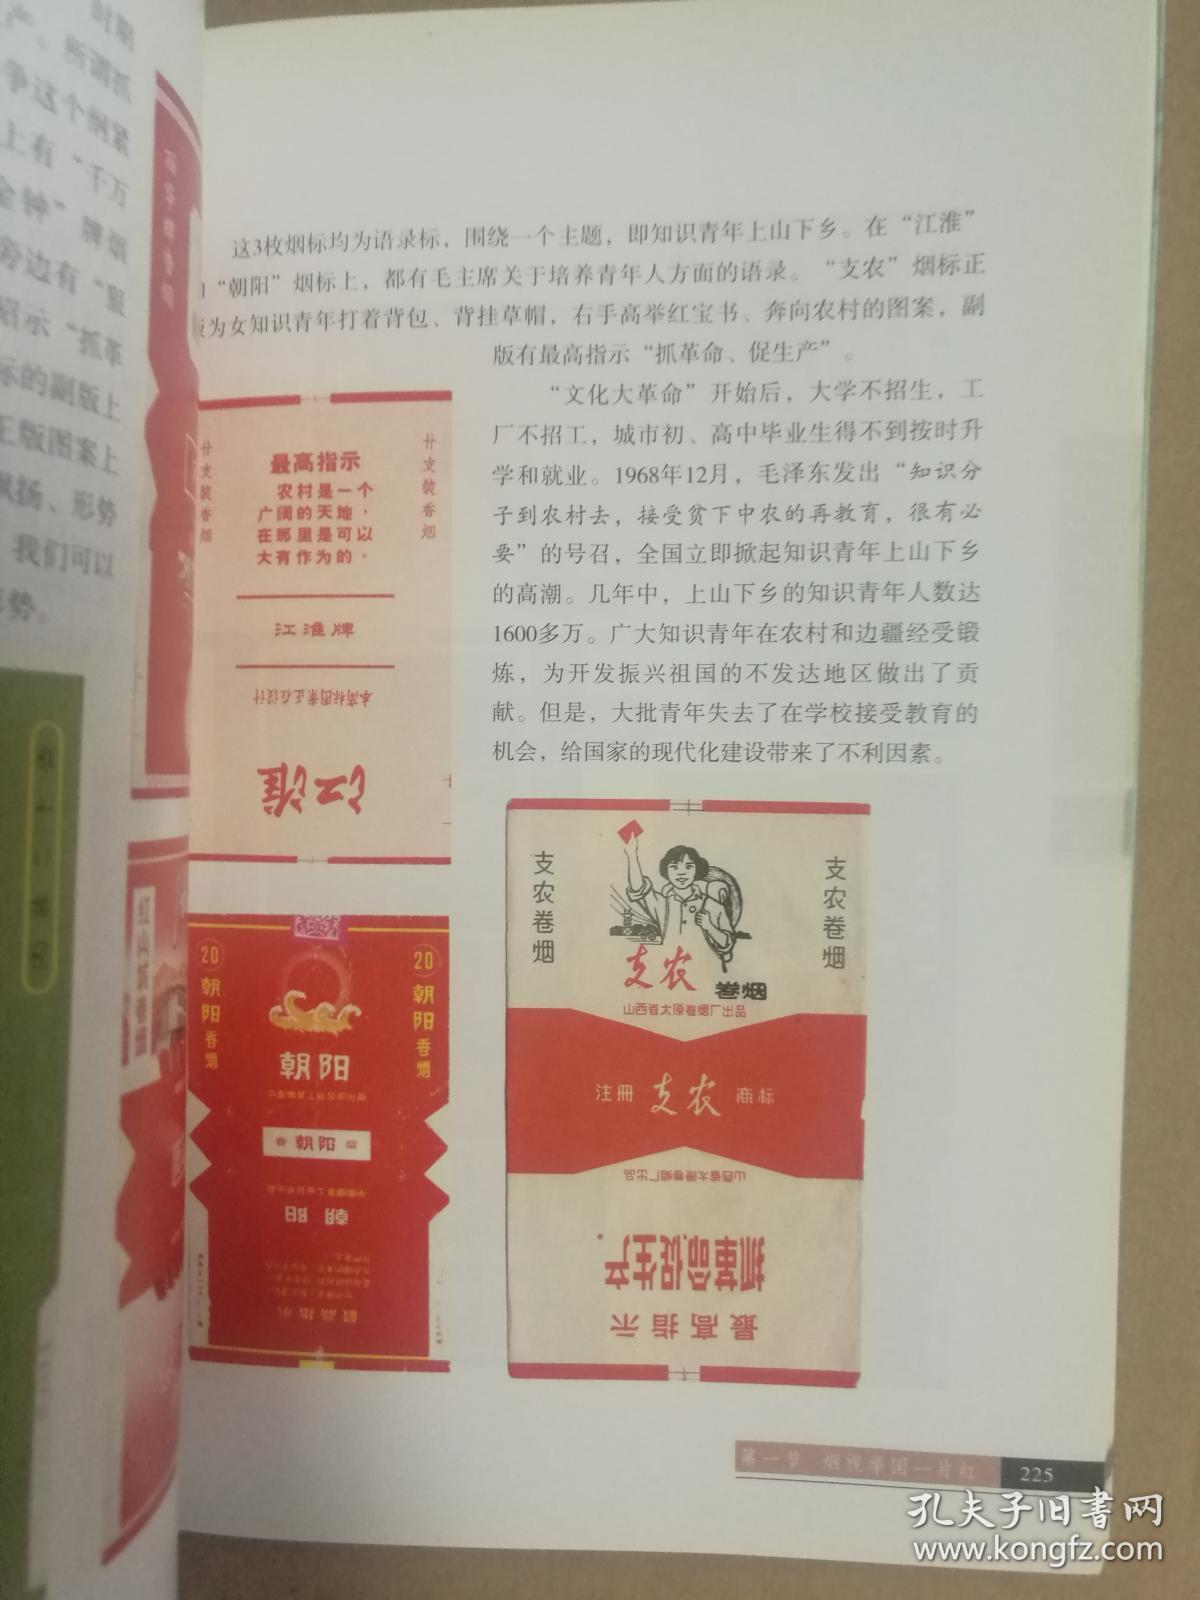 岁月烟霞，新中国红色烟标集锦 作者:  . 出版社: